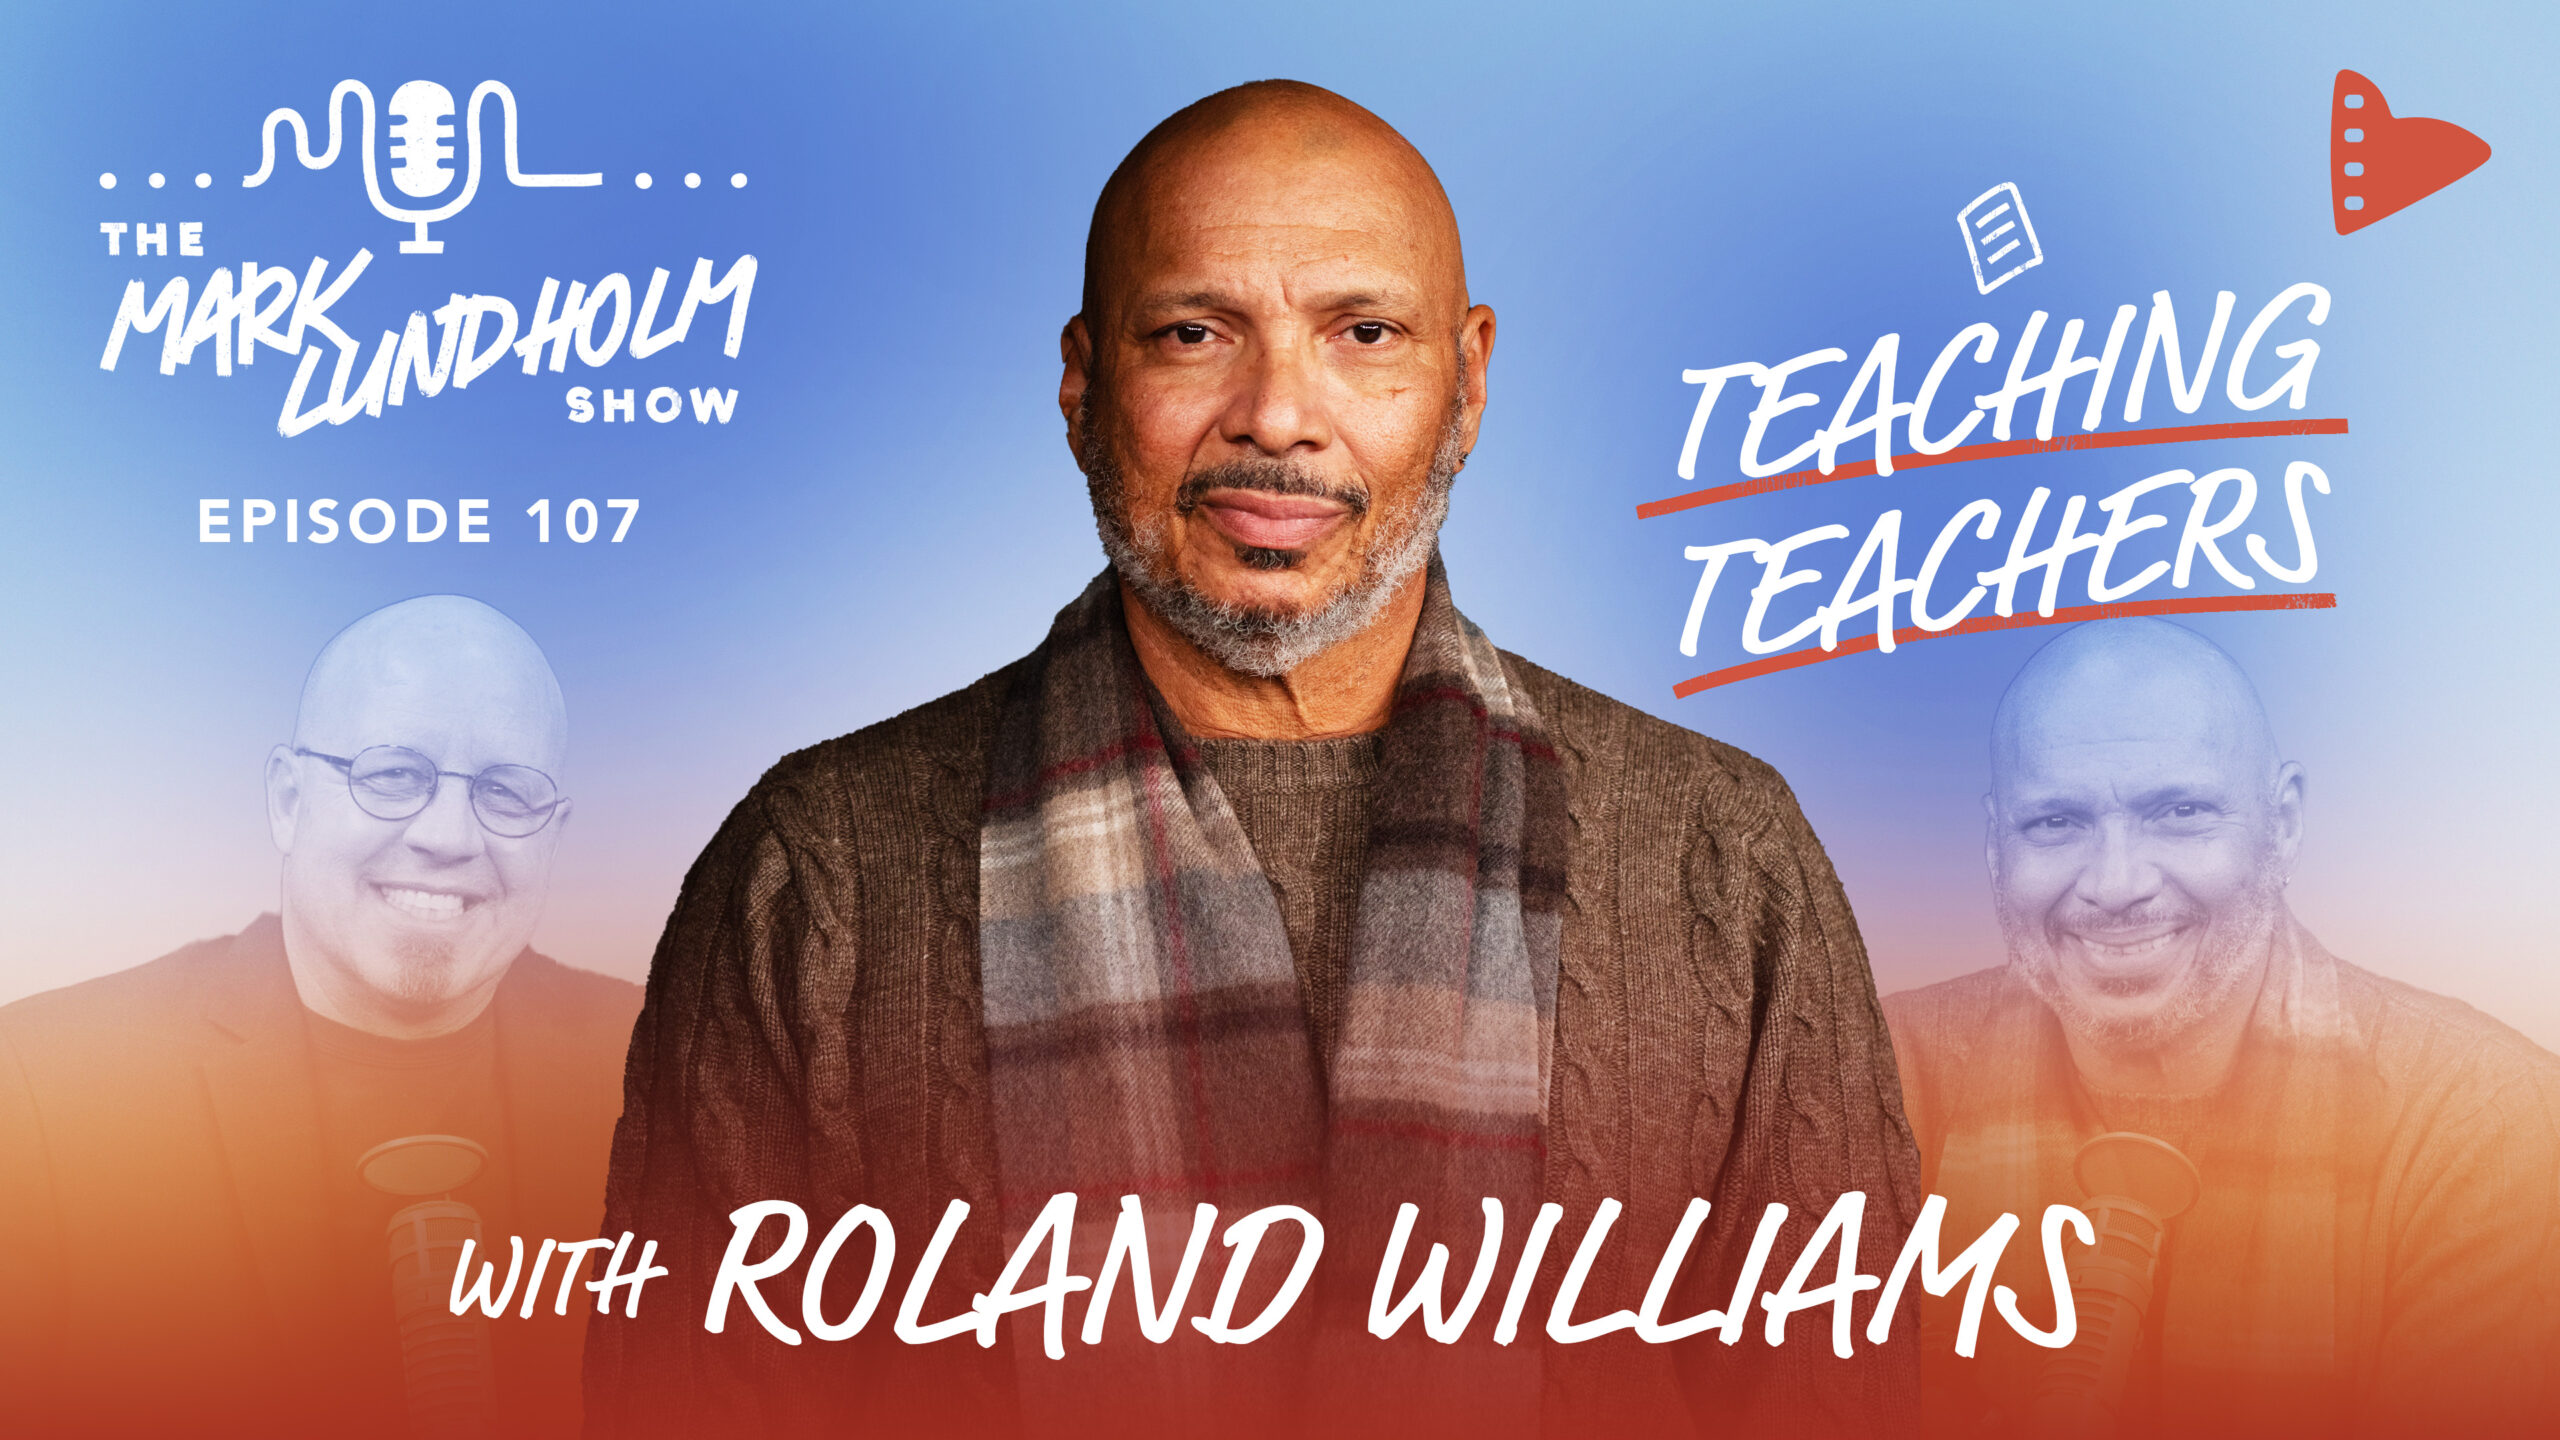 Episode 107: Teaching Teachers